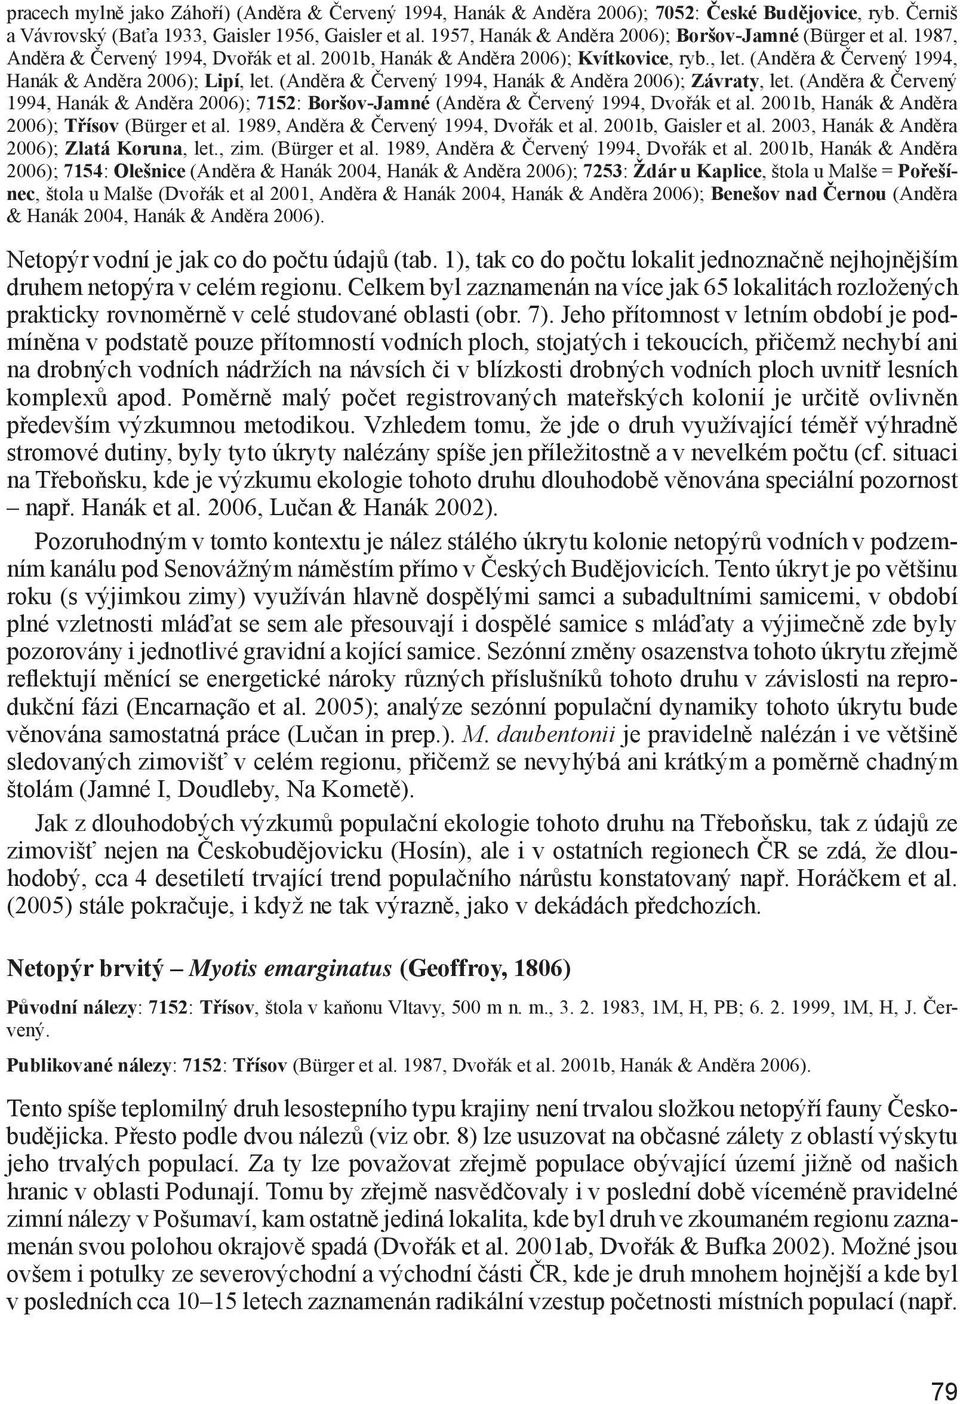 (Anděra & Červený 1994, Hanák & Anděra 2006); Lipí, let. (Anděra & Červený 1994, Hanák & Anděra 2006); Závraty, let.